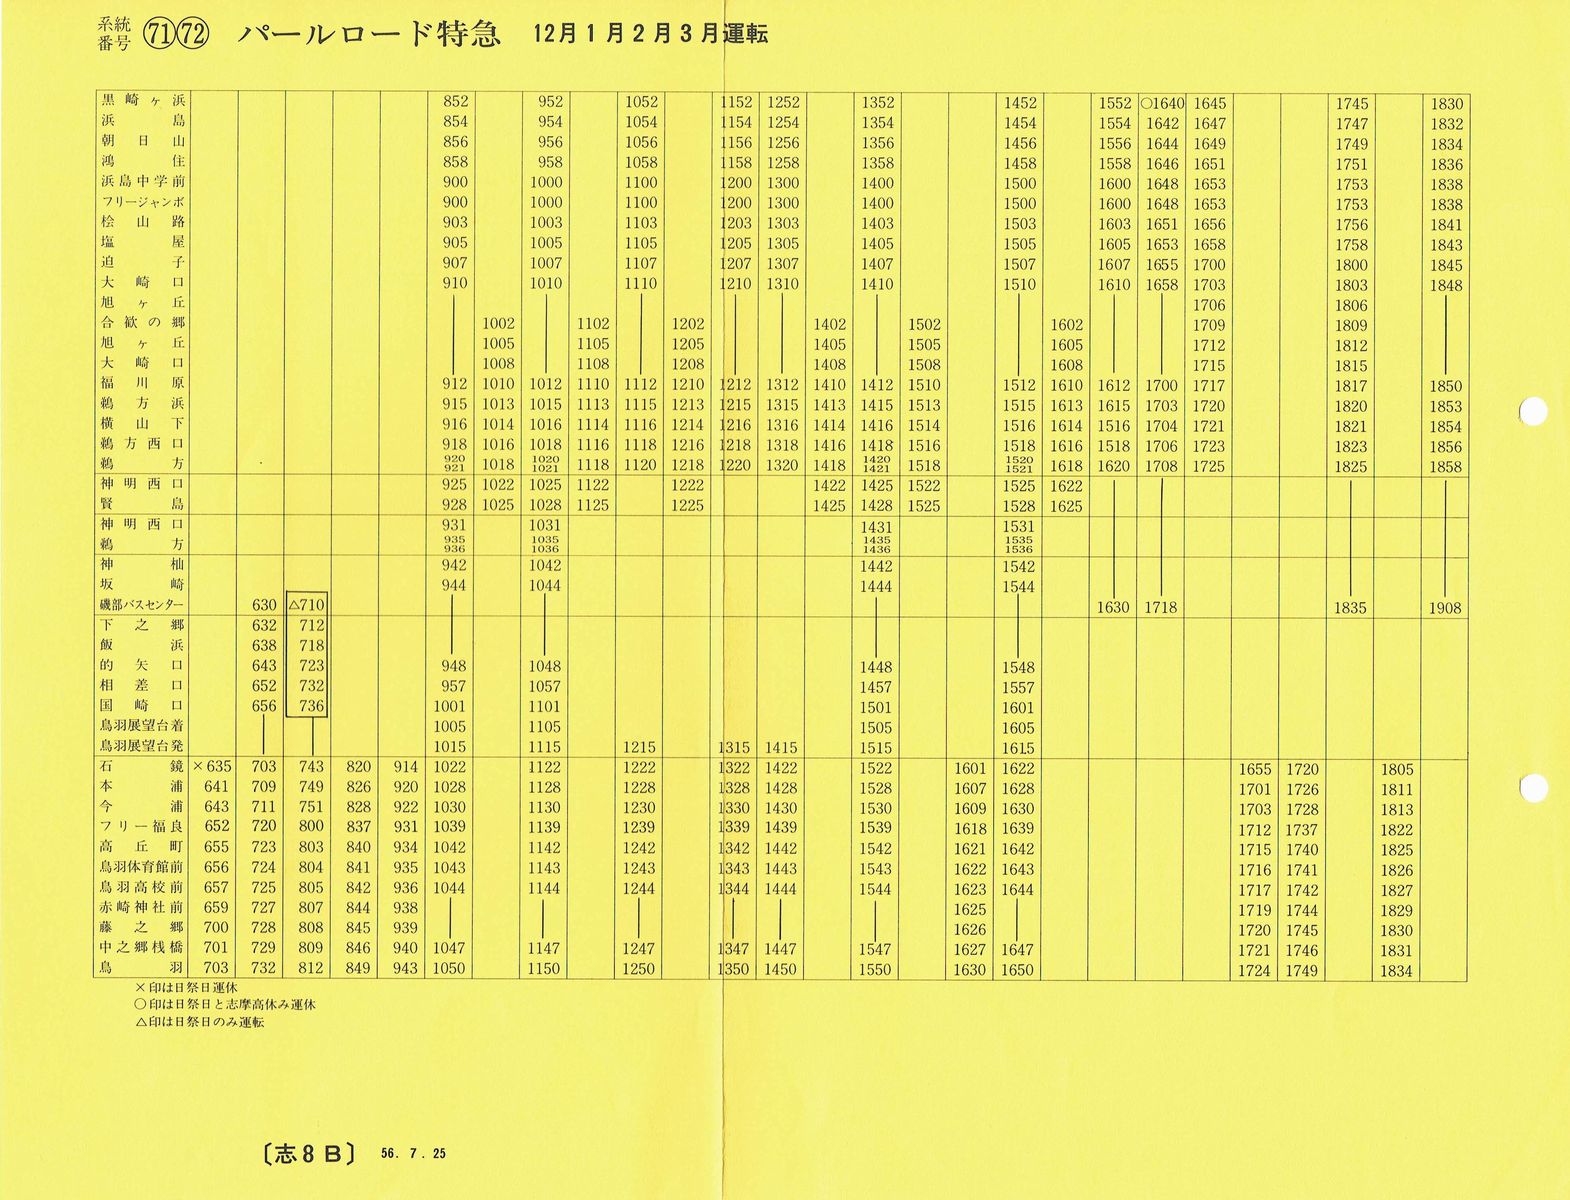 1981-07-25現在_三重交通_[71][72]パールロード特急(12月〜３月)時刻表裏面